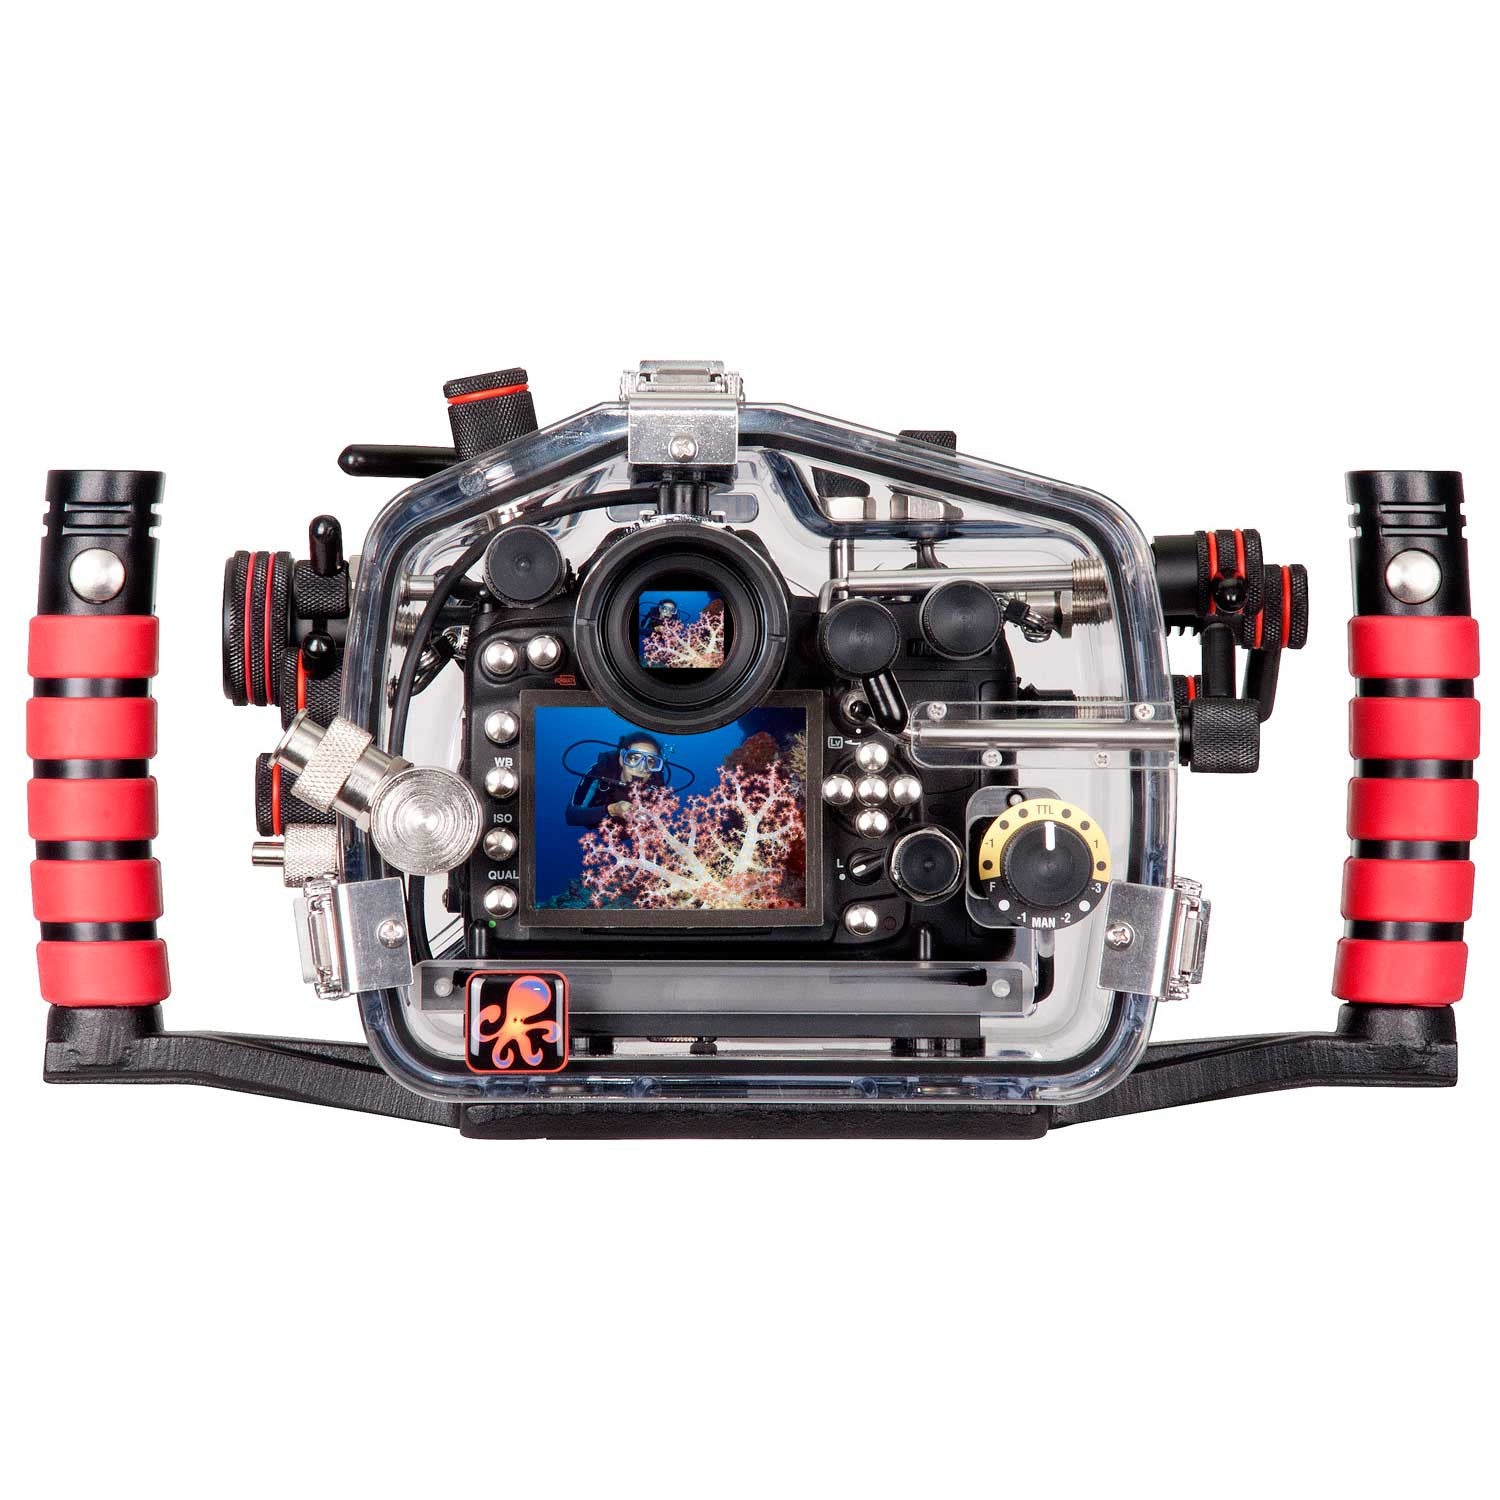 200FL Underwater TTL Housing for Nikon D7000 DSLR Camera